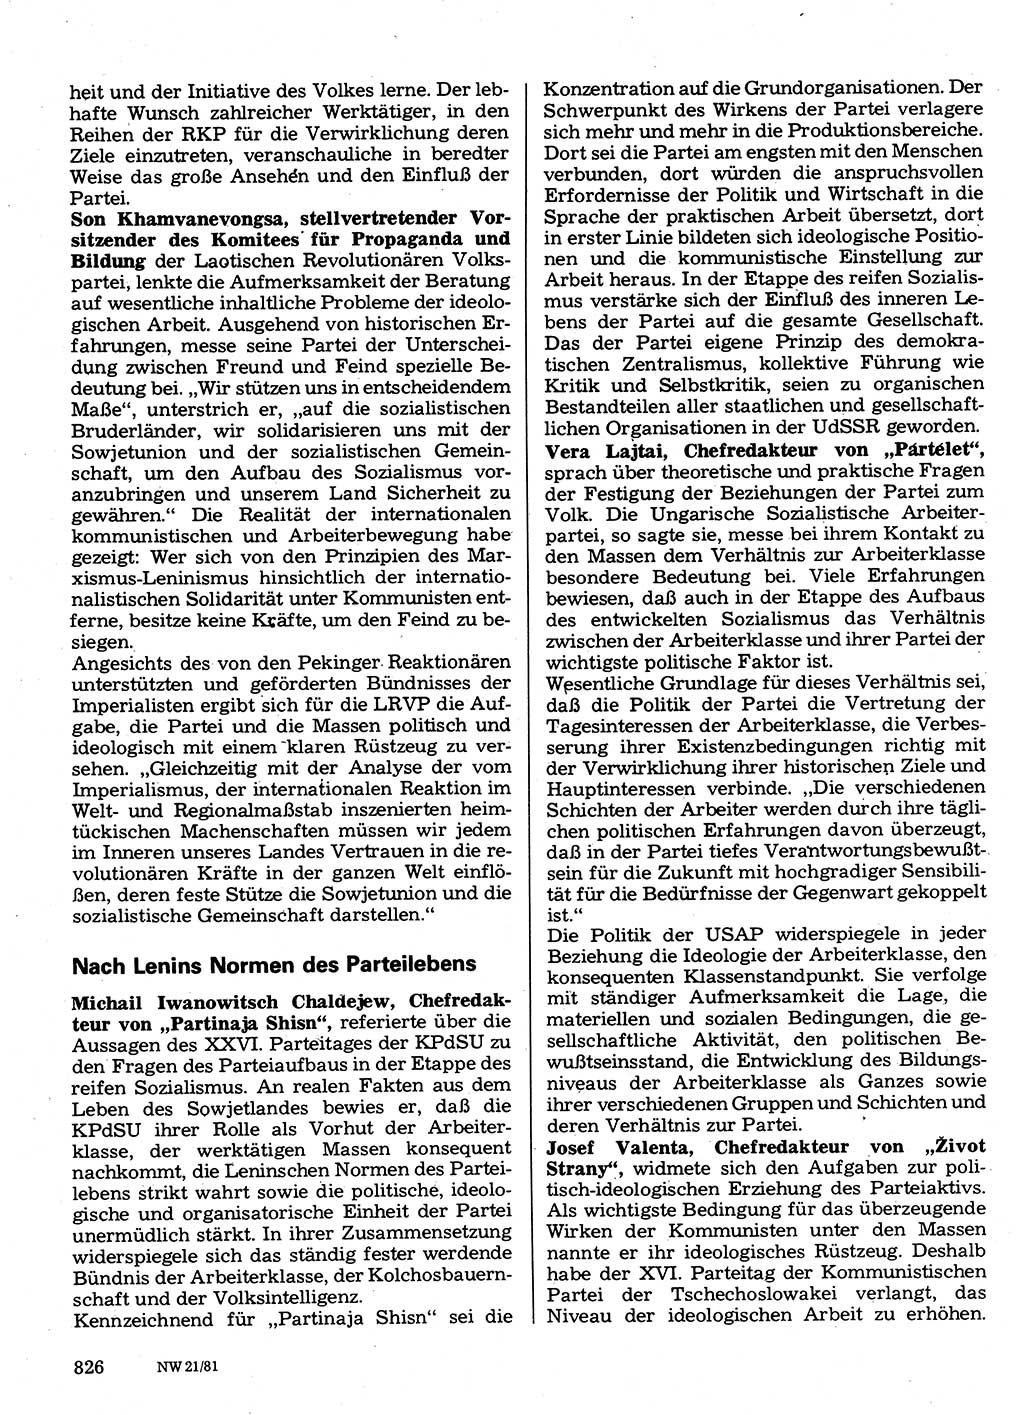 Neuer Weg (NW), Organ des Zentralkomitees (ZK) der SED (Sozialistische Einheitspartei Deutschlands) für Fragen des Parteilebens, 36. Jahrgang [Deutsche Demokratische Republik (DDR)] 1981, Seite 826 (NW ZK SED DDR 1981, S. 826)